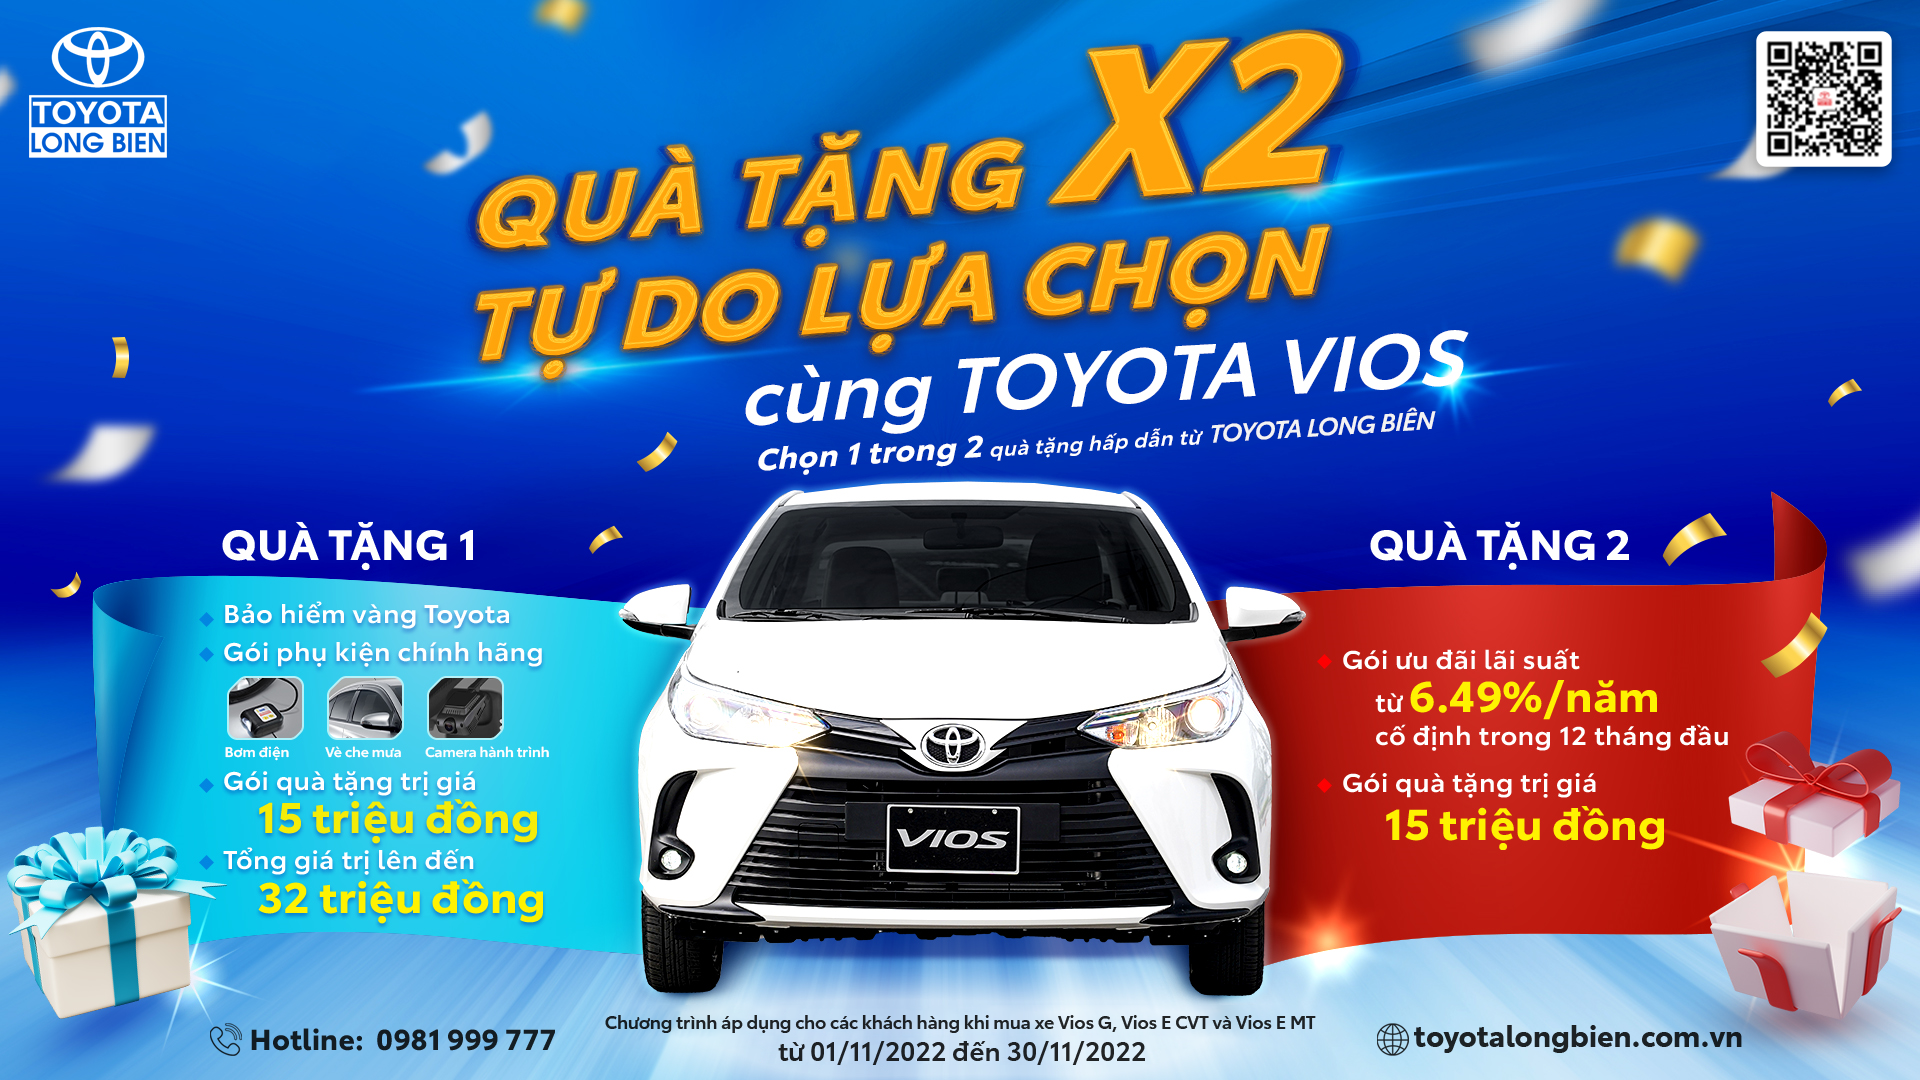 “Quà tặng X2 - Tự do lựa chọn cùng Toyota Vios” tháng 11/2022